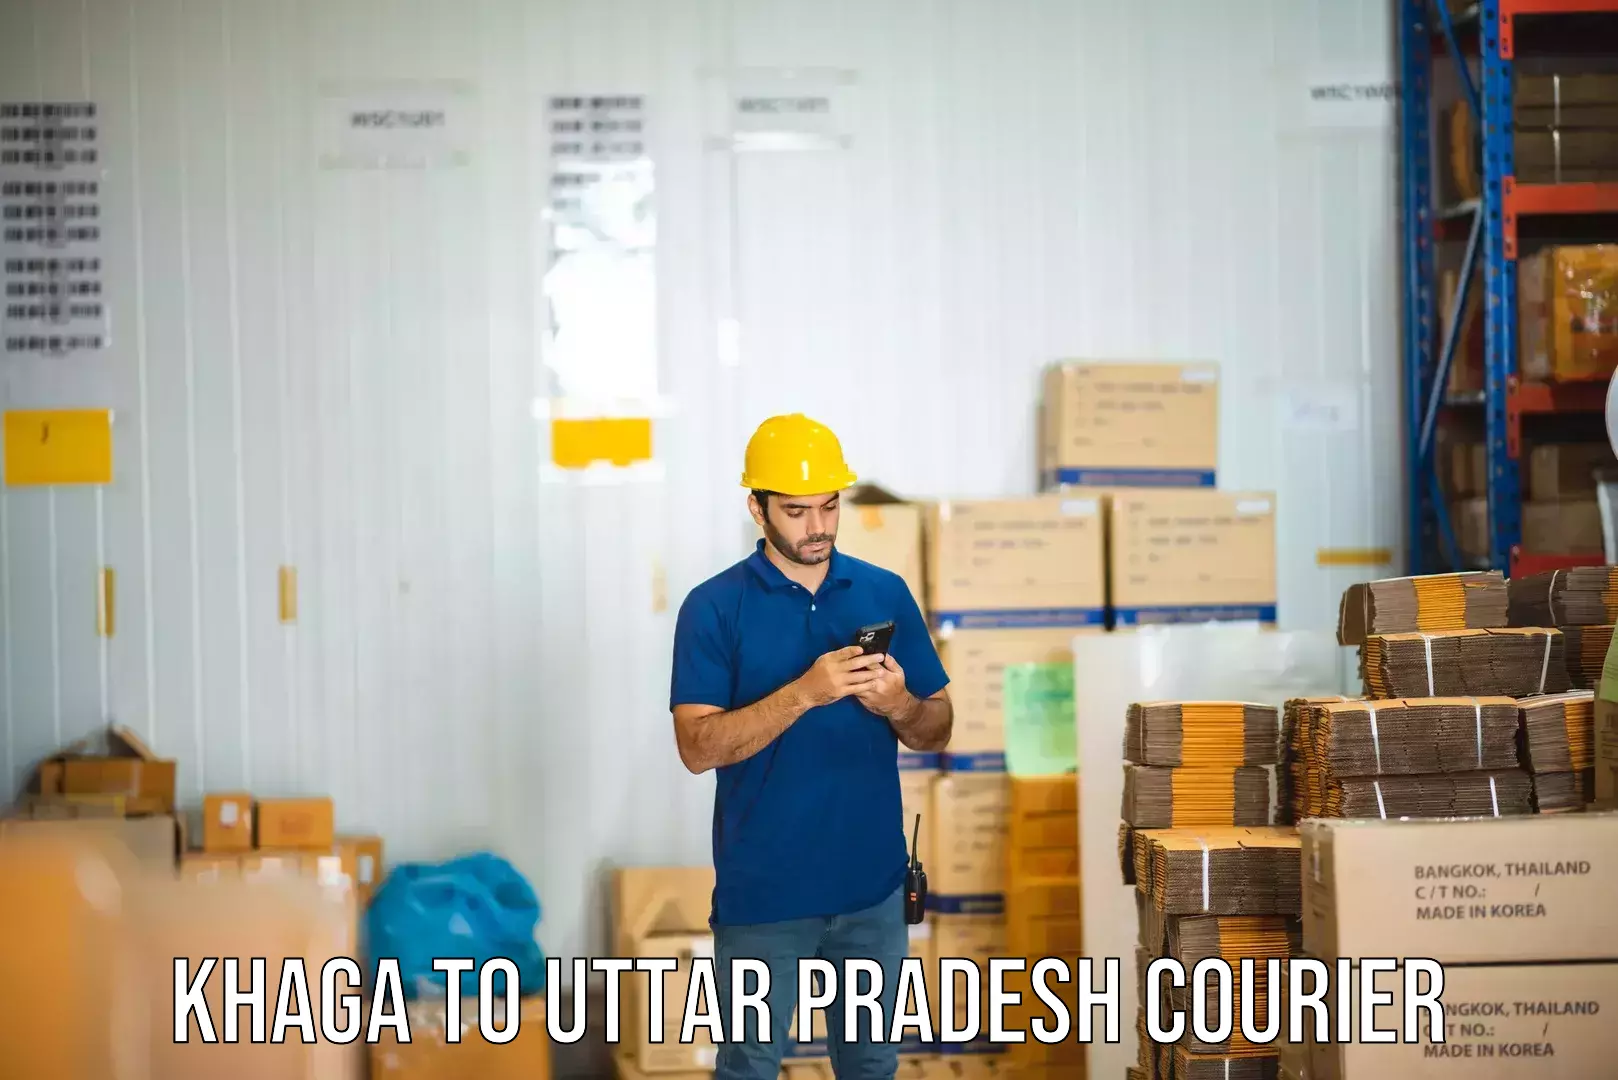 Easy access courier services Khaga to Noida